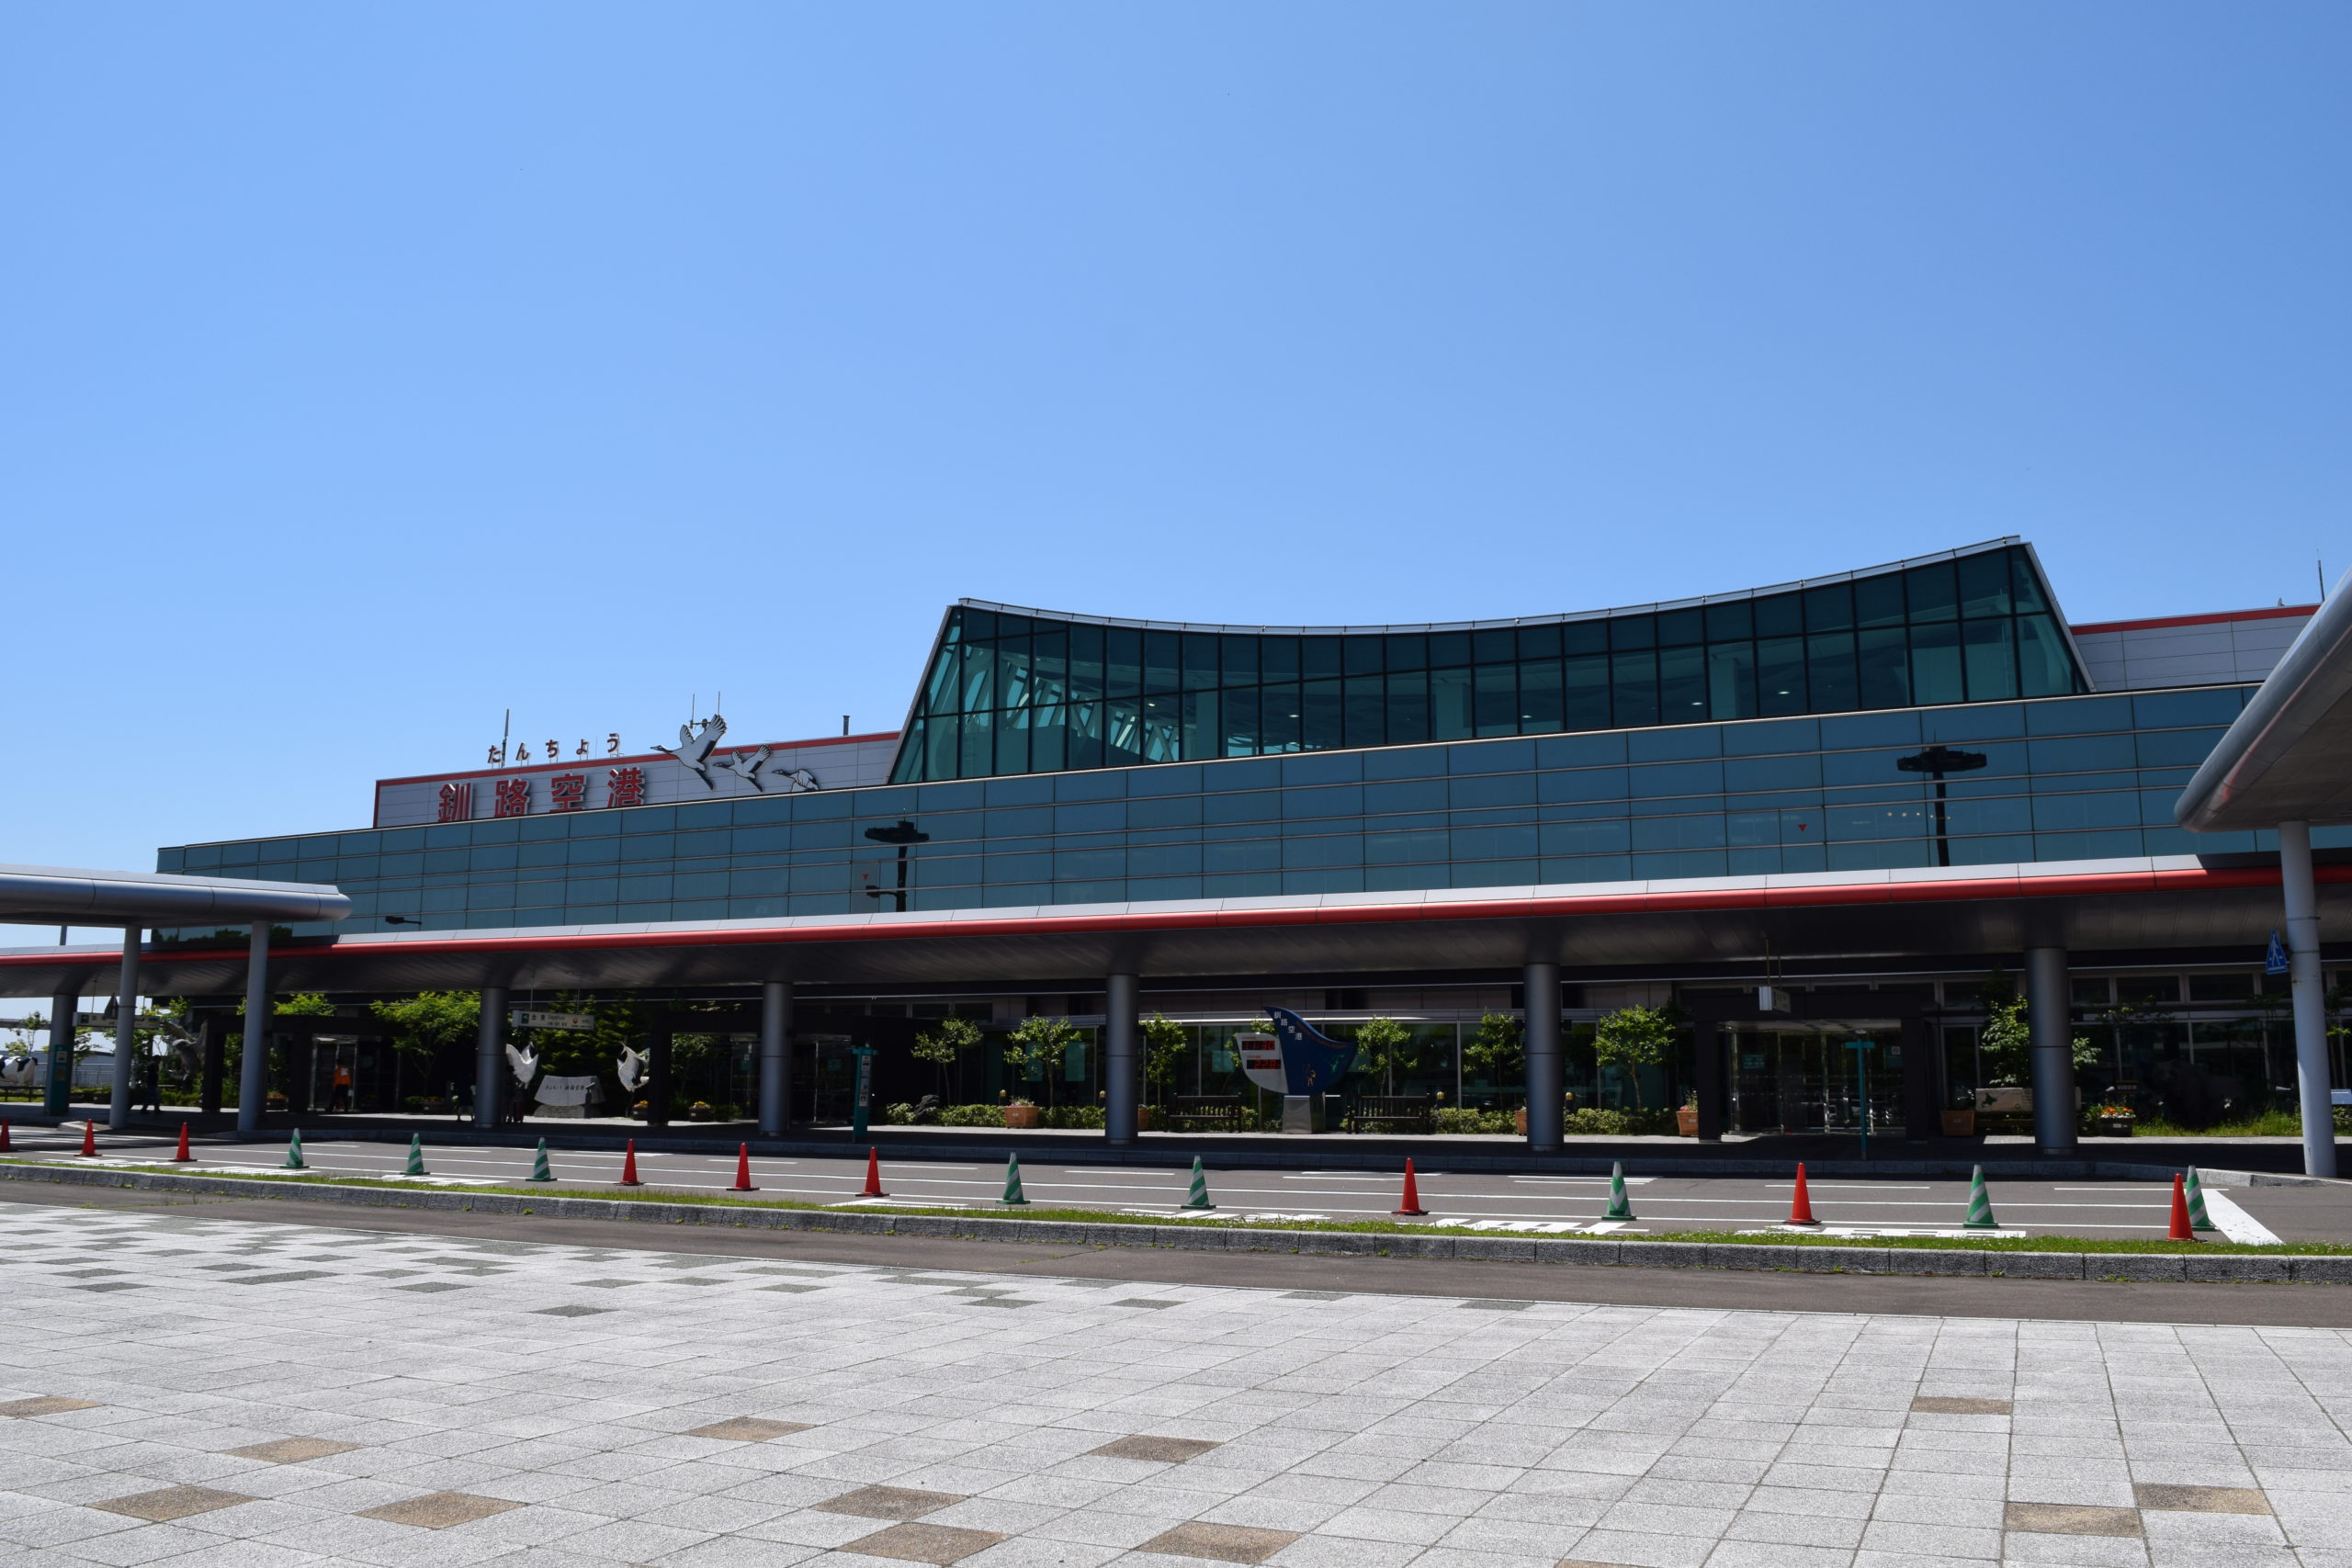 釧路空港で利用できる無料Wi-Fi「Kushiro-Airport Wi-Fi」の設定方法と接続手順